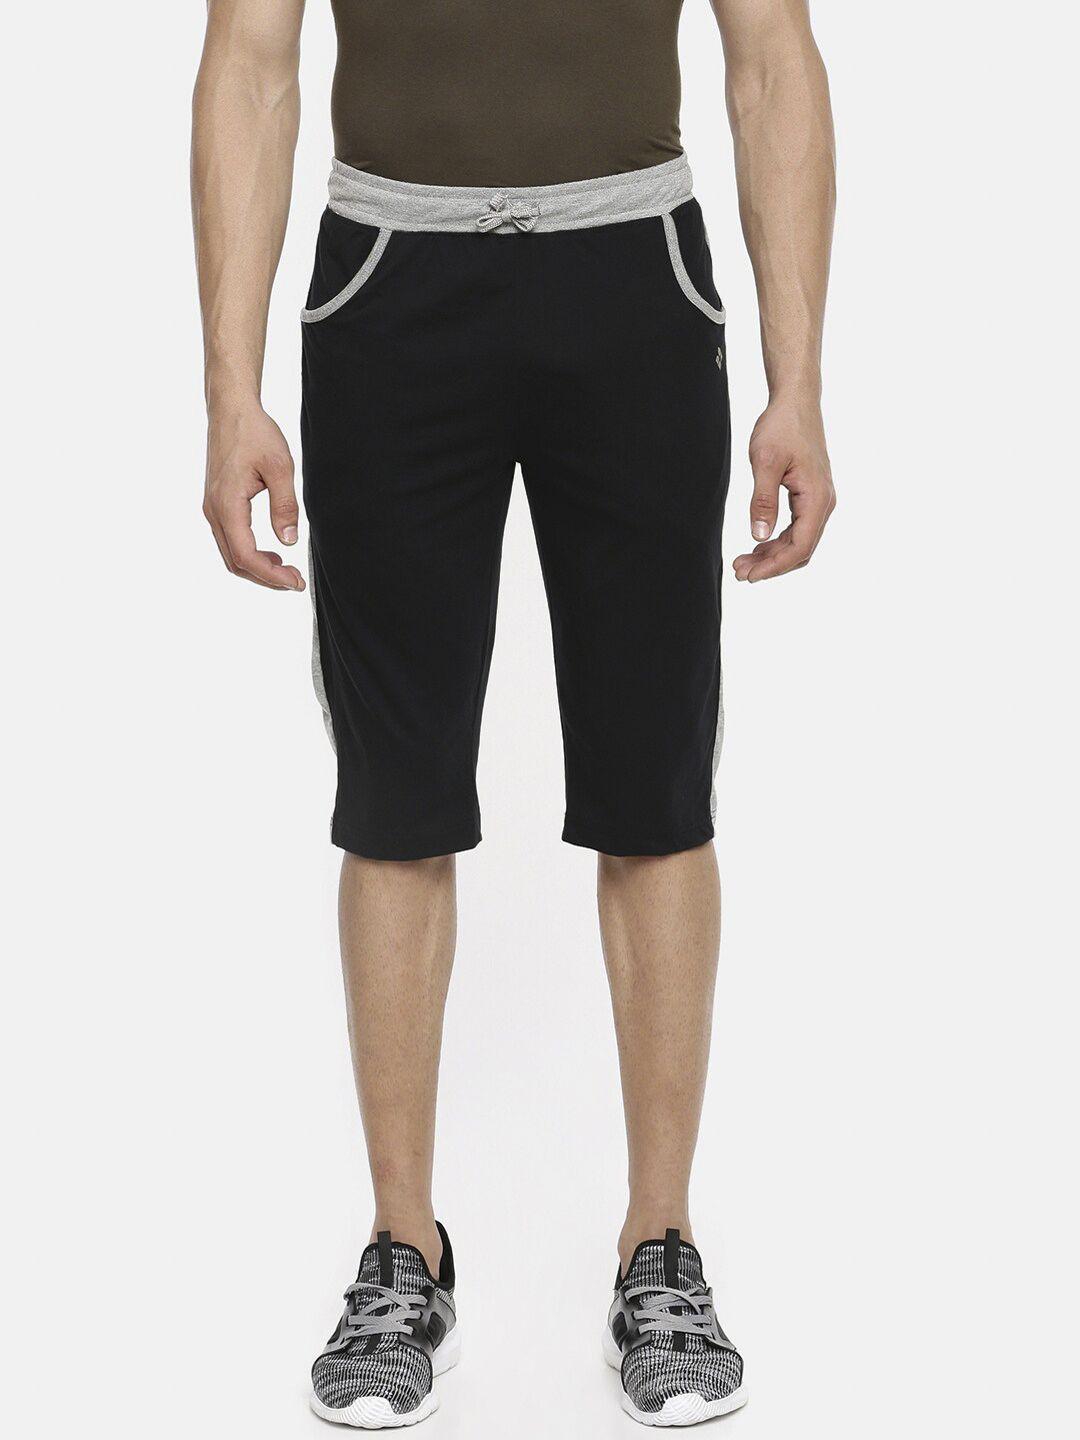 dollar-men-black-colourblocked-regular-fit-regular-shorts